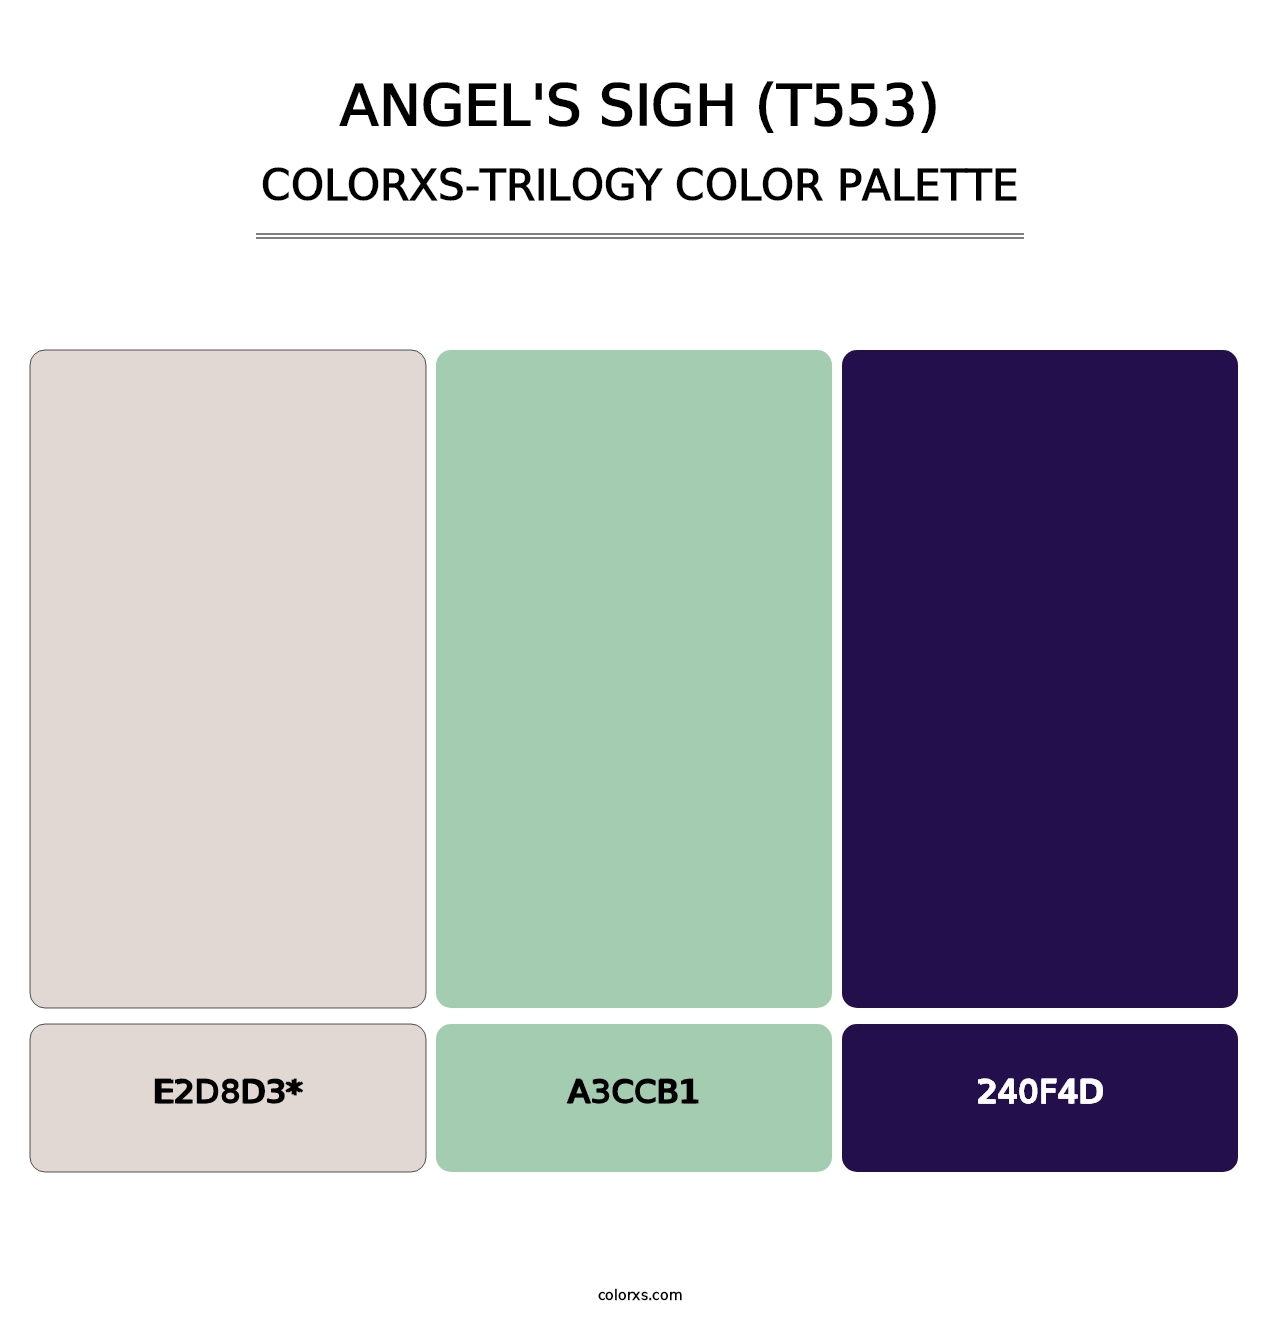 Angel's Sigh (T553) - Colorxs Trilogy Palette